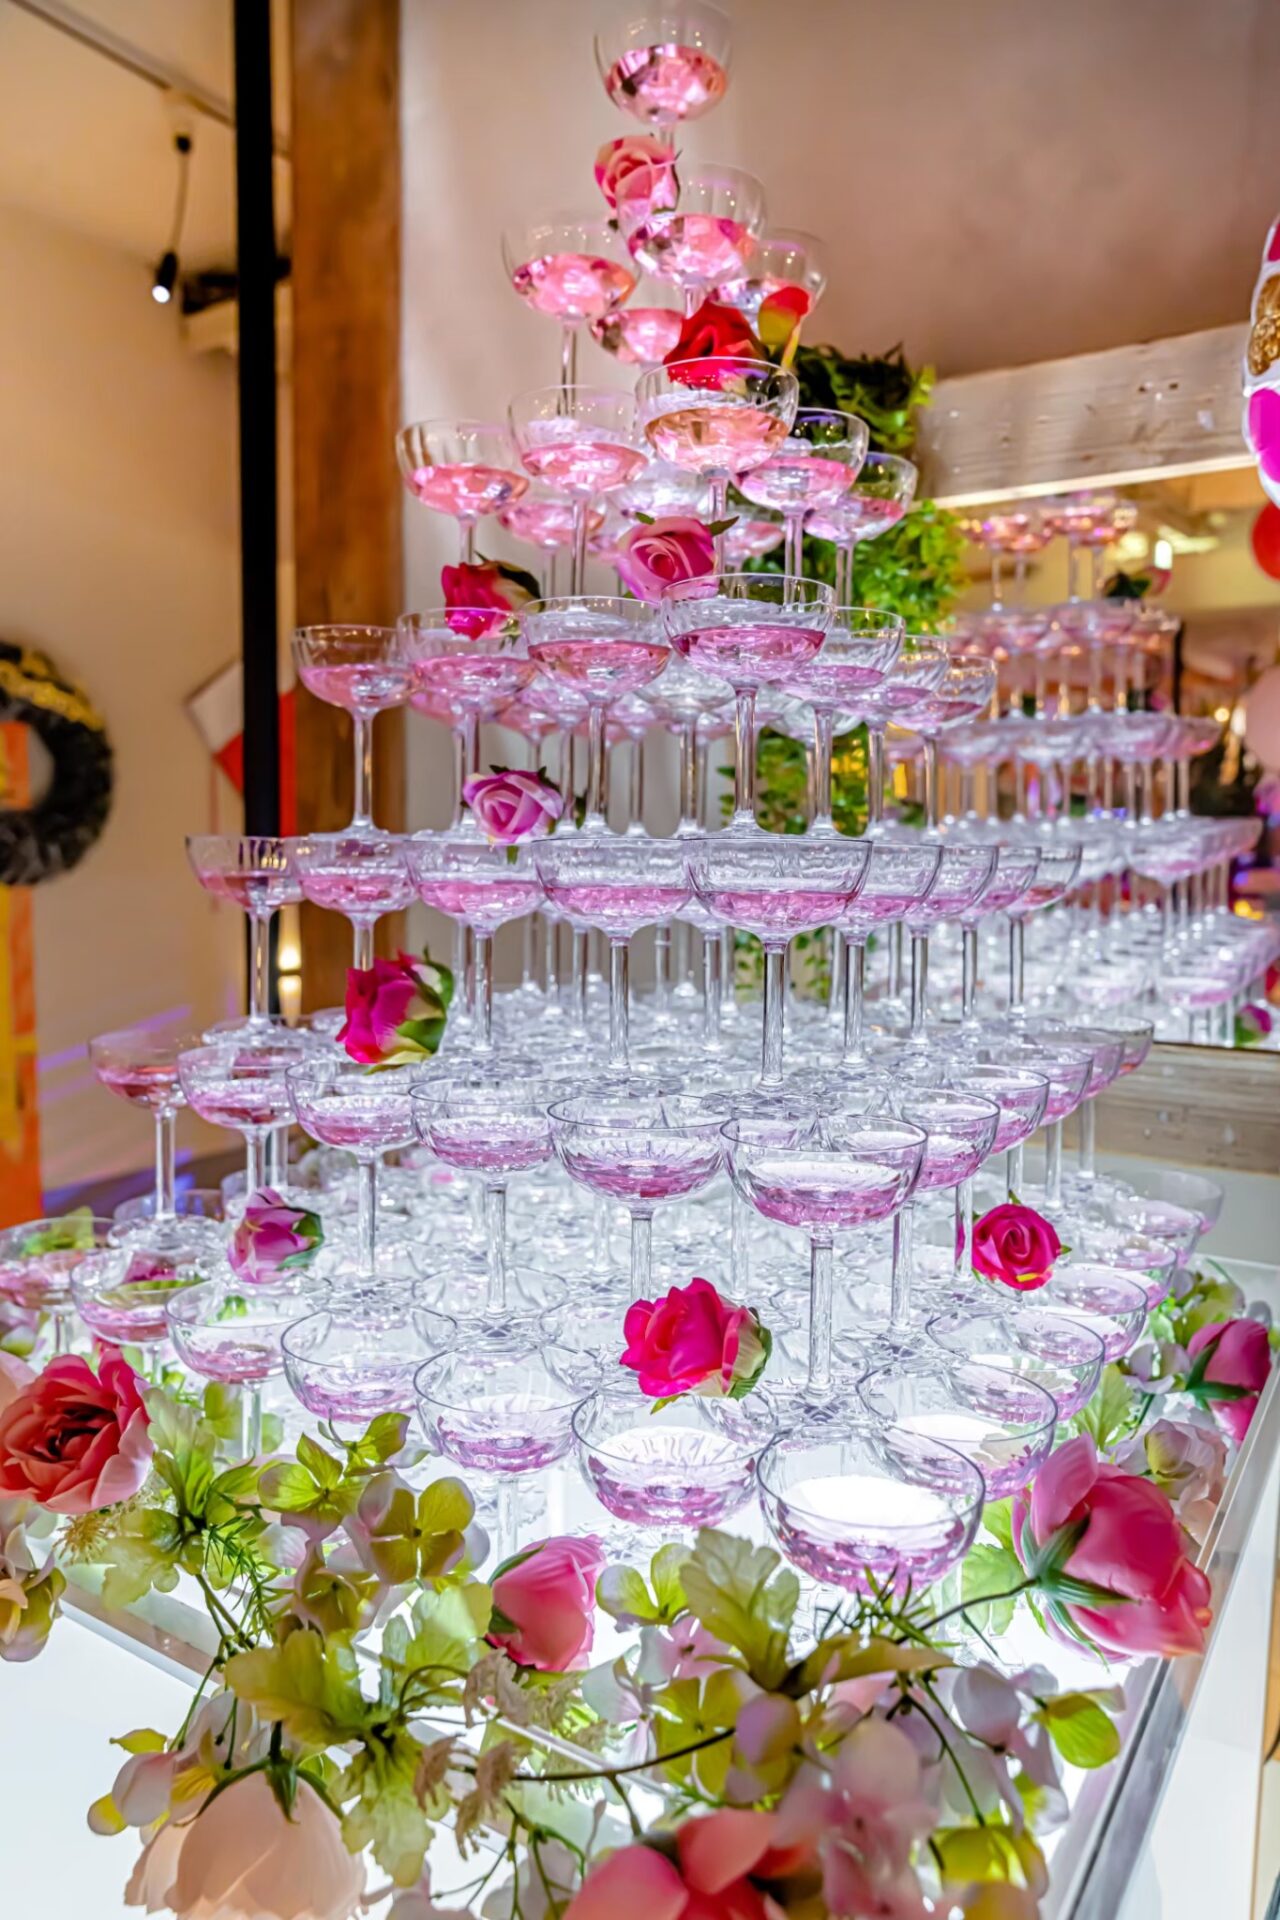 香檳塔與可愛的粉紅色花朵和玻璃杯